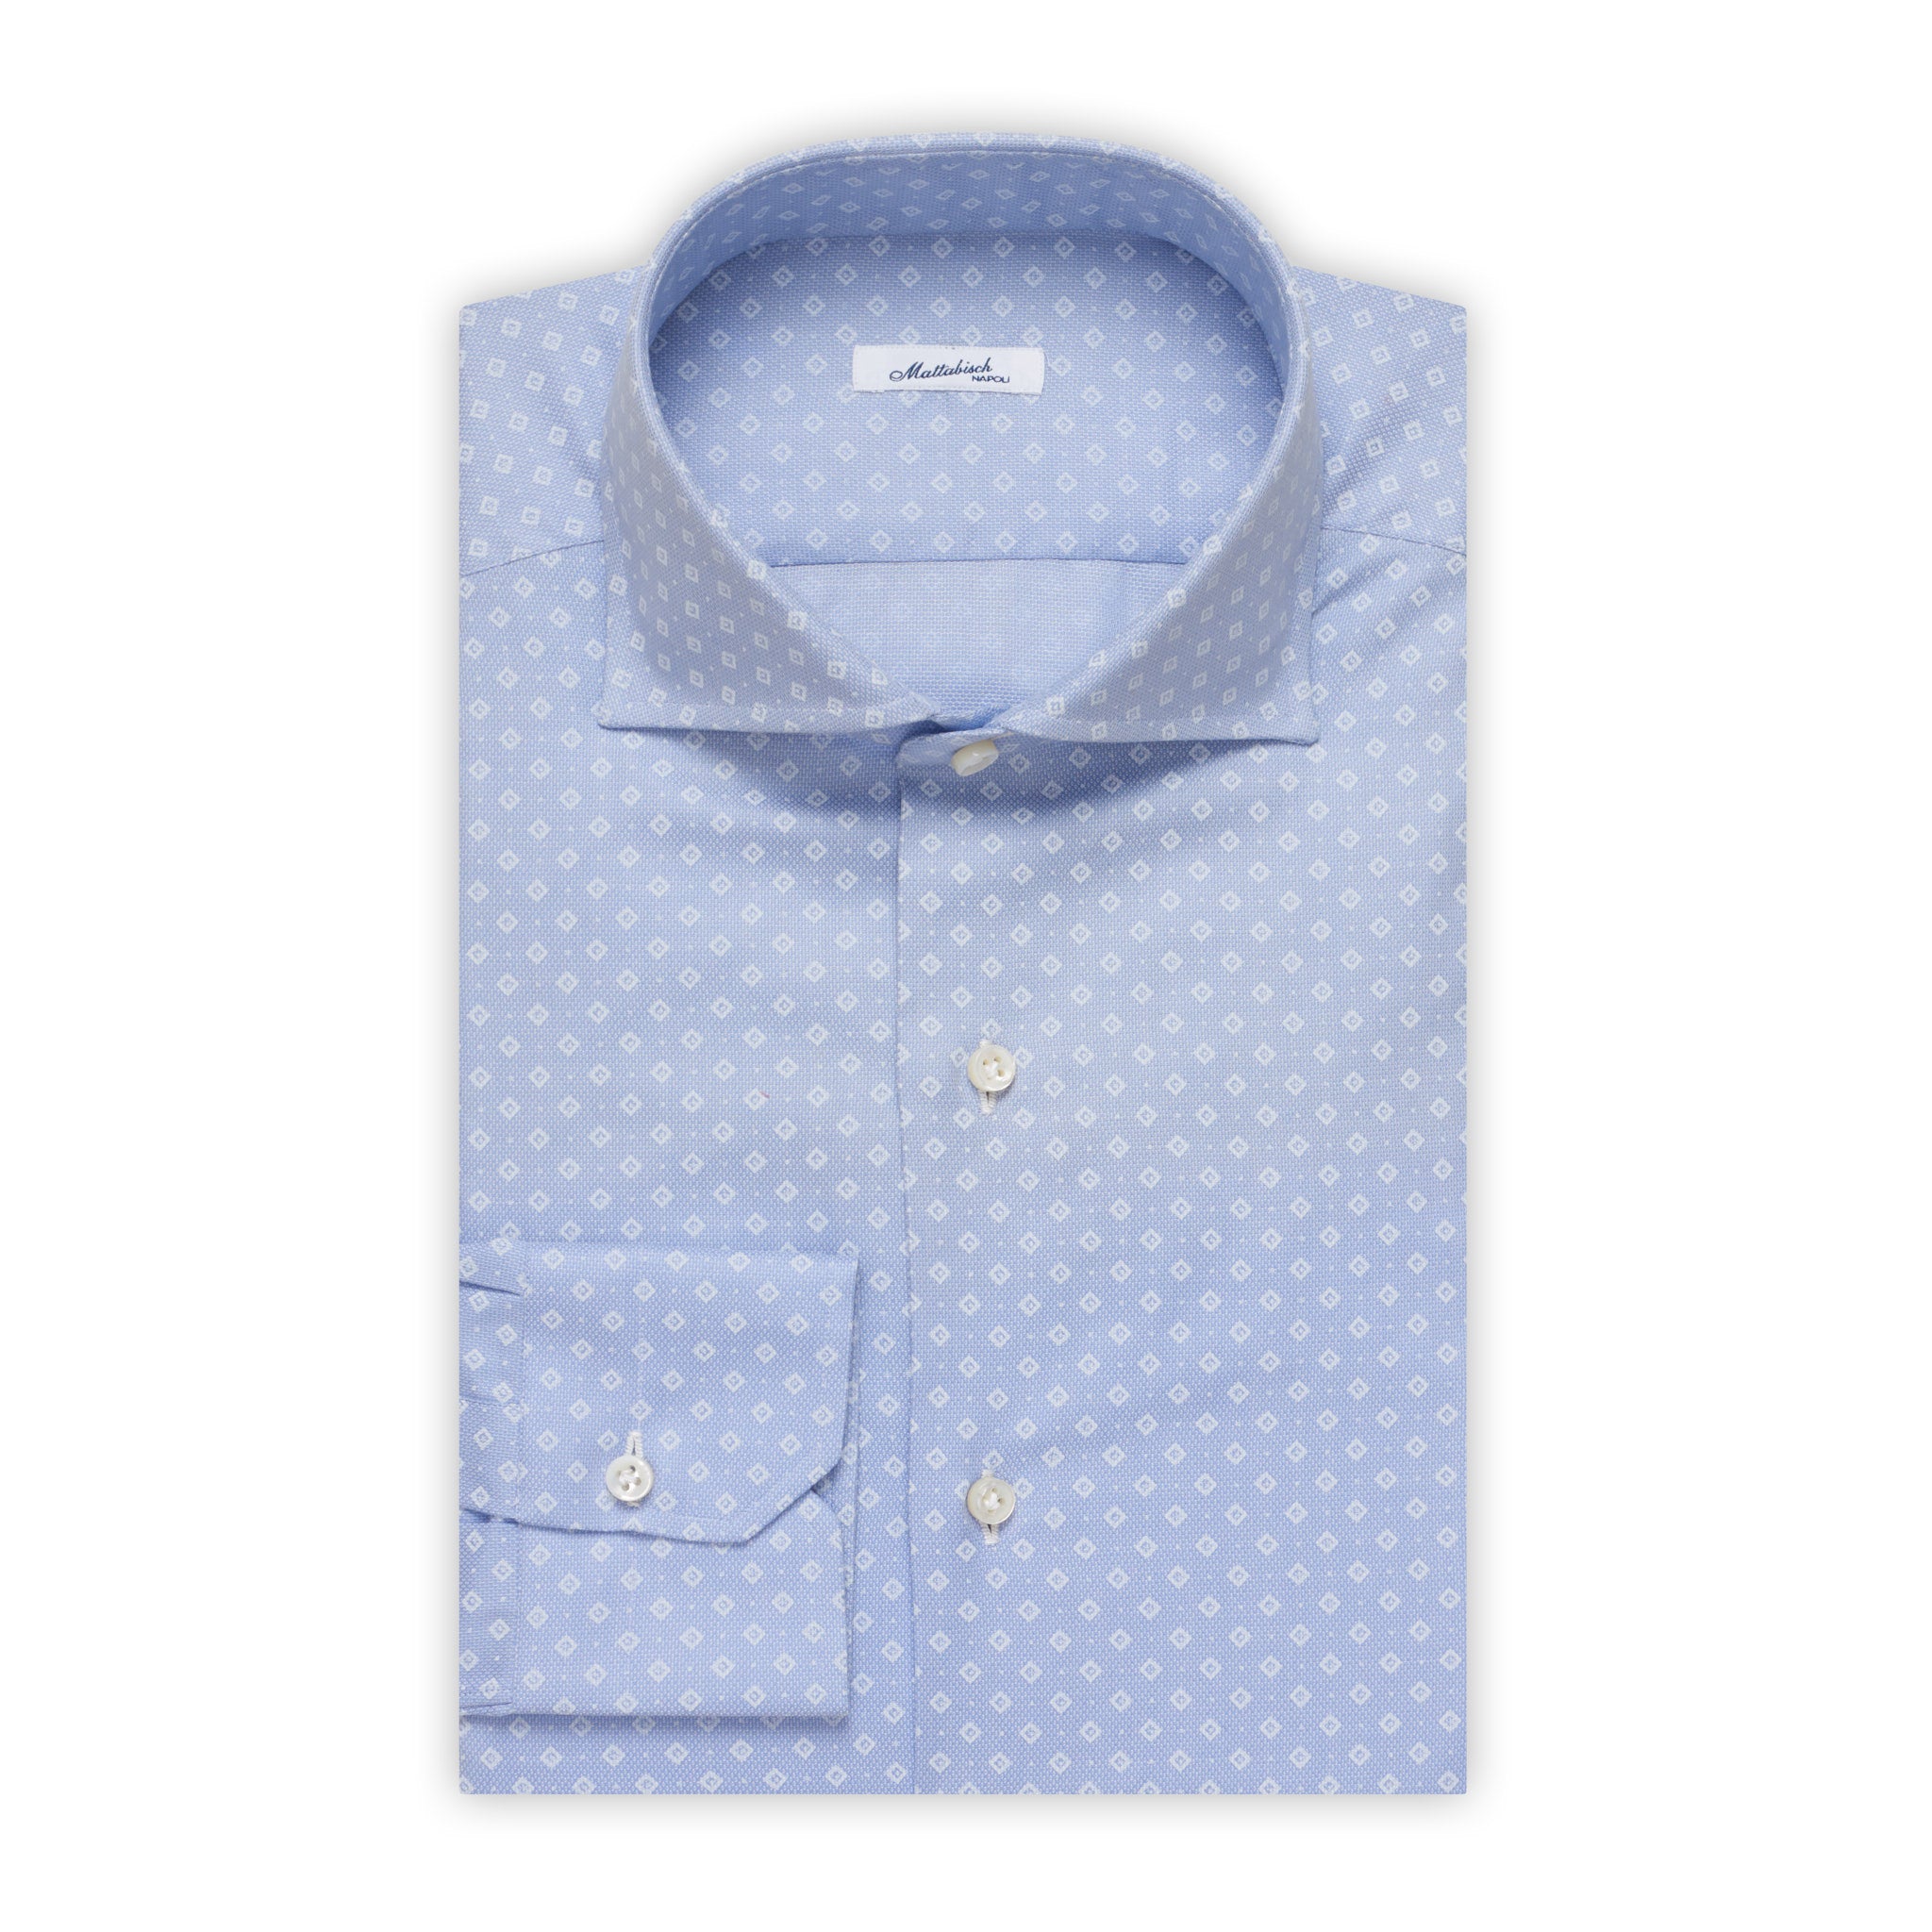 MATTABISCH by Kiton Handmade Blue Rhombus Dot Shirt 40 NEW US 15.75 Slim Fit MATTABISCH